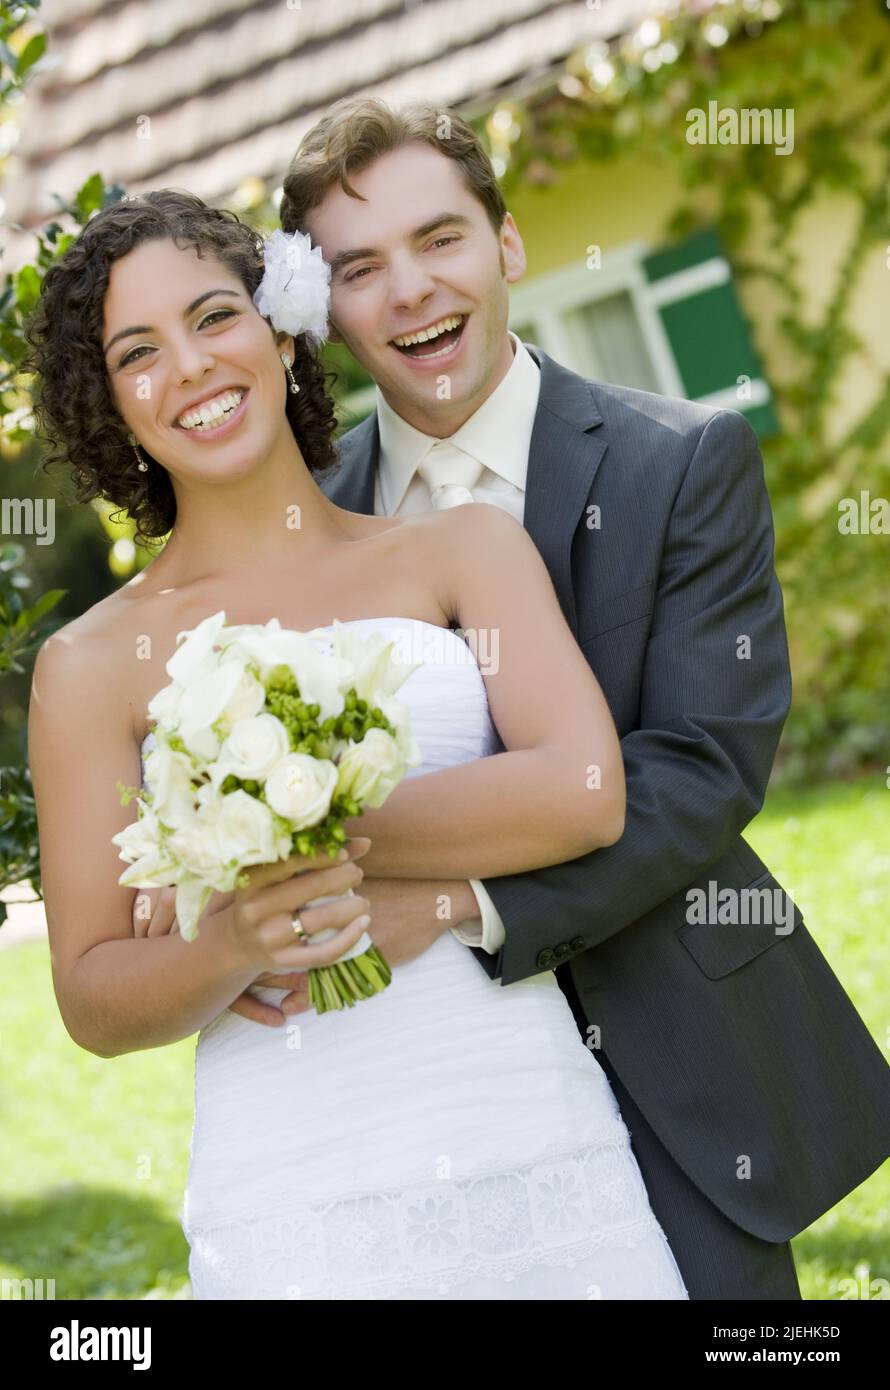 Verliebtes Brautpaar, 35, 40, Jahre, Mann, Frau, weisses Brautkleid, Anzugträger, Braut, Bräutigam, Stock Photo